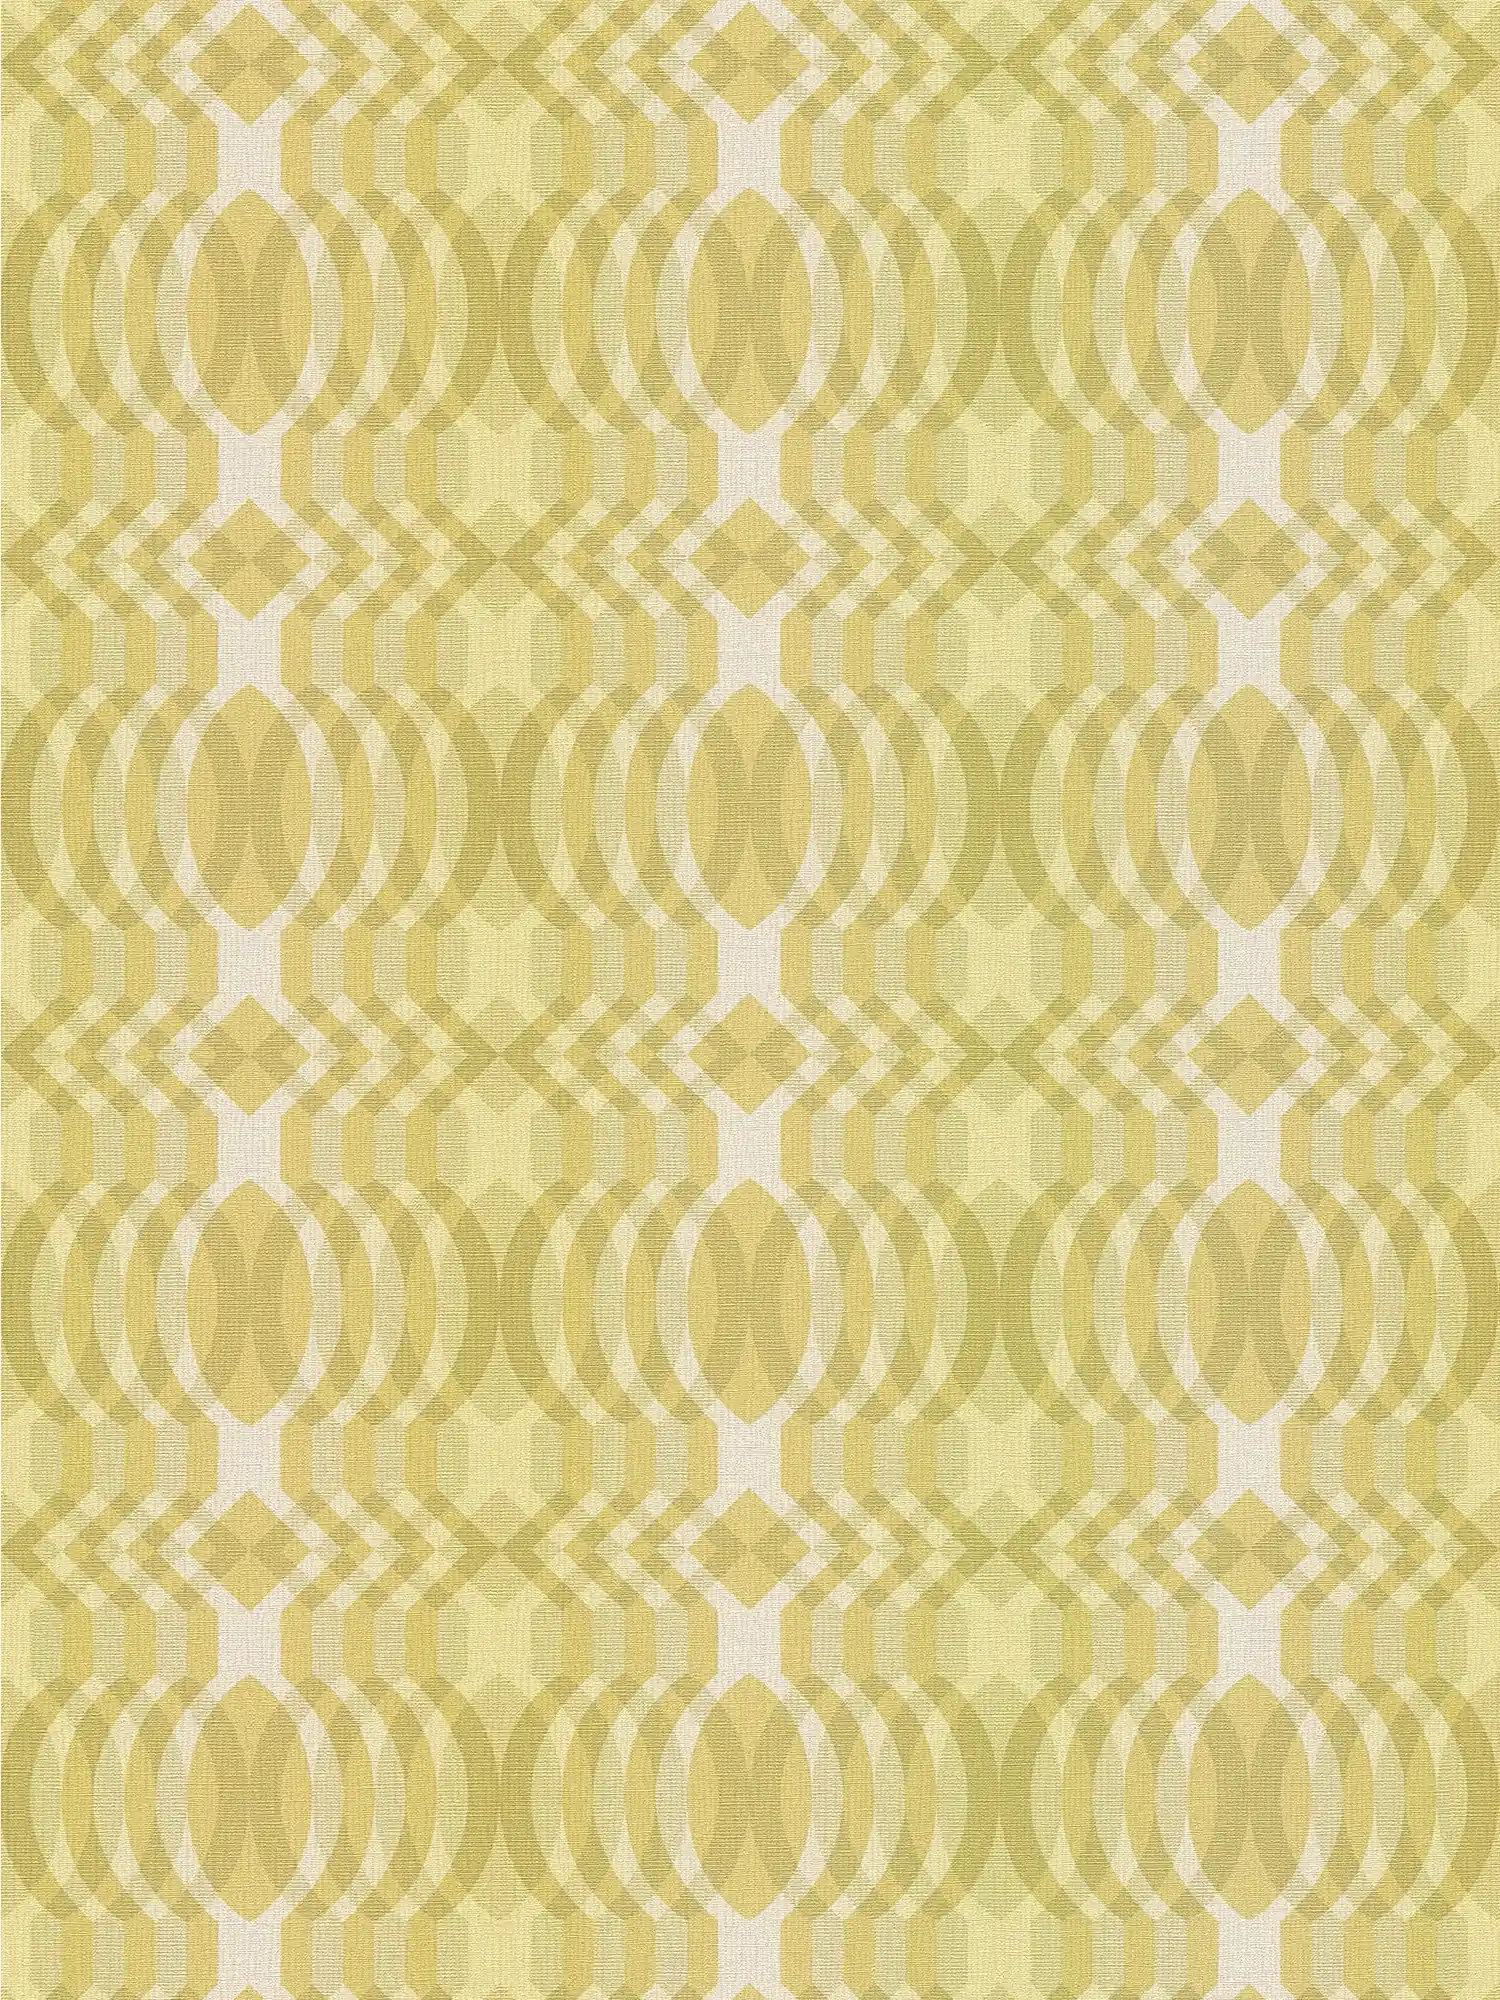         Vliesbehang in retrostijl met geometrisch patroon - groen, crème, wit
    